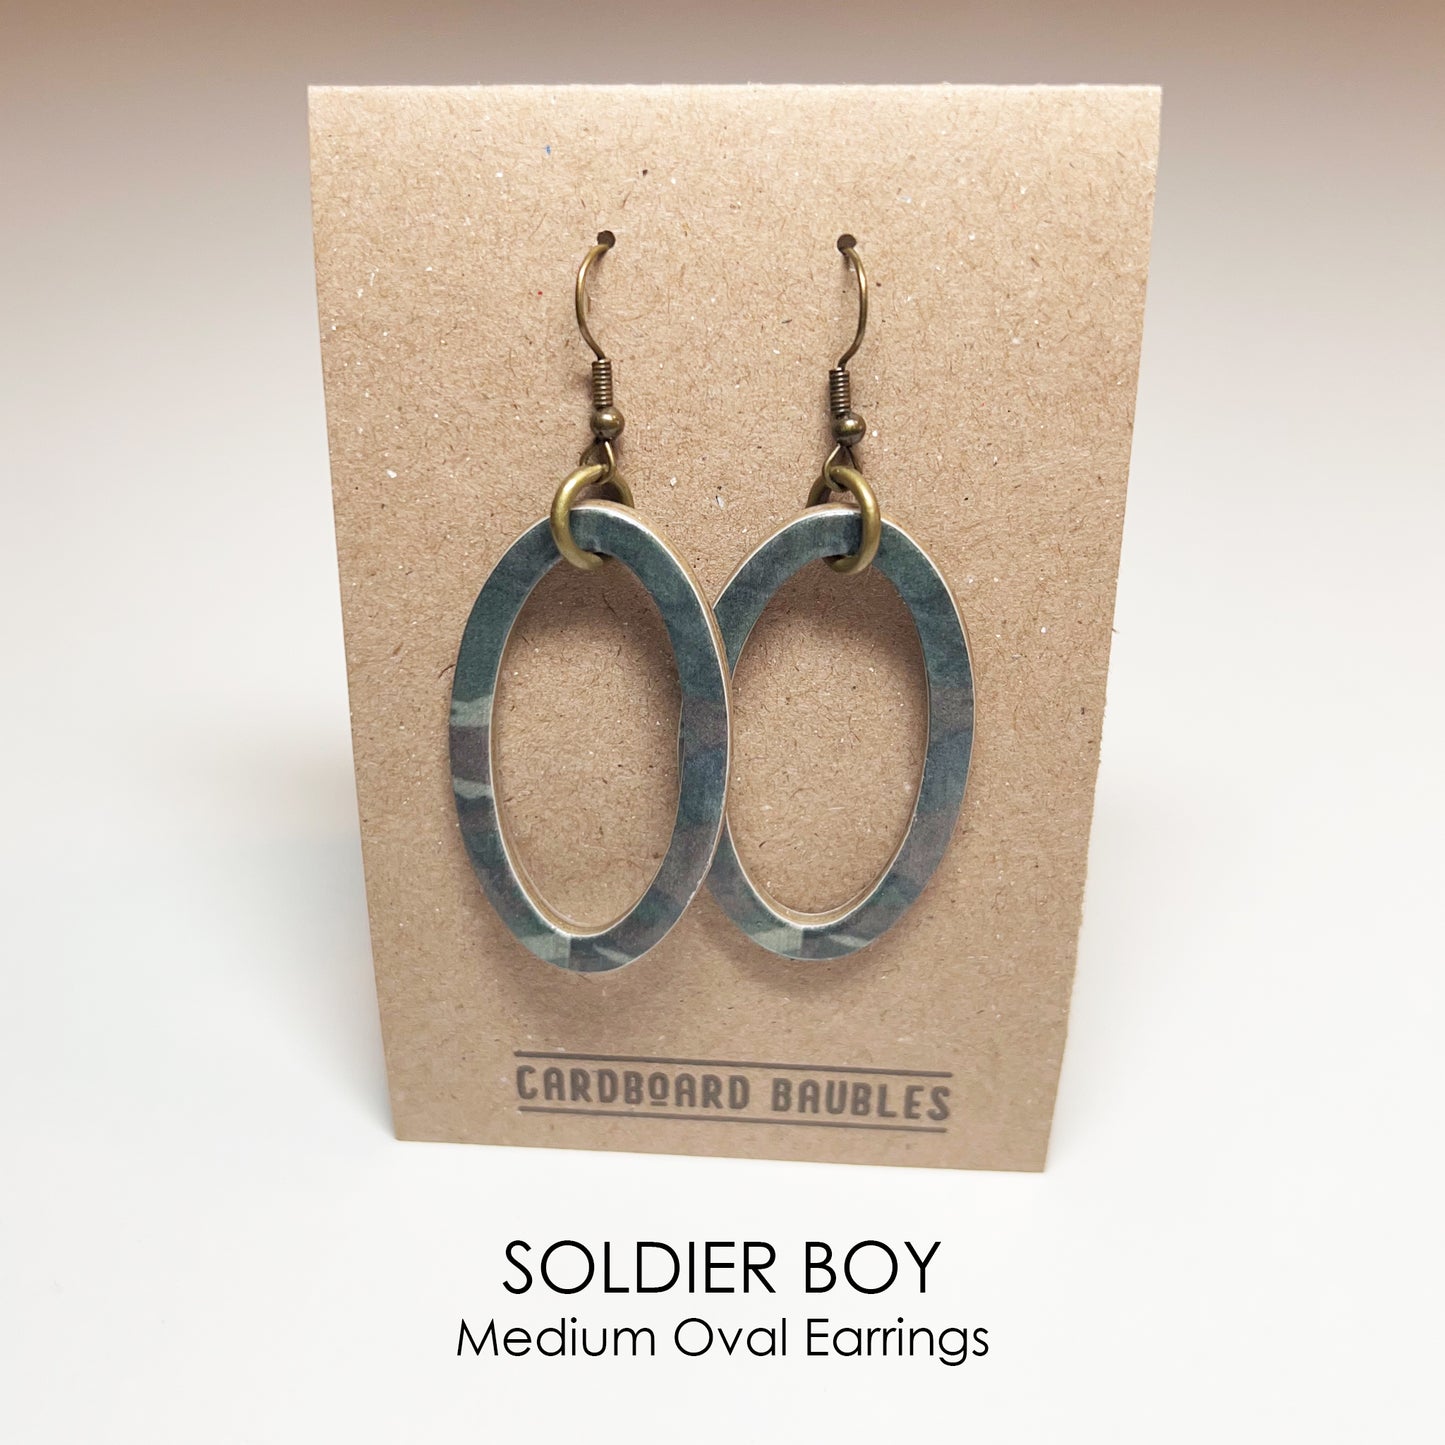 SOLDIER BOY - Oval Cardboard Baubles Earrings